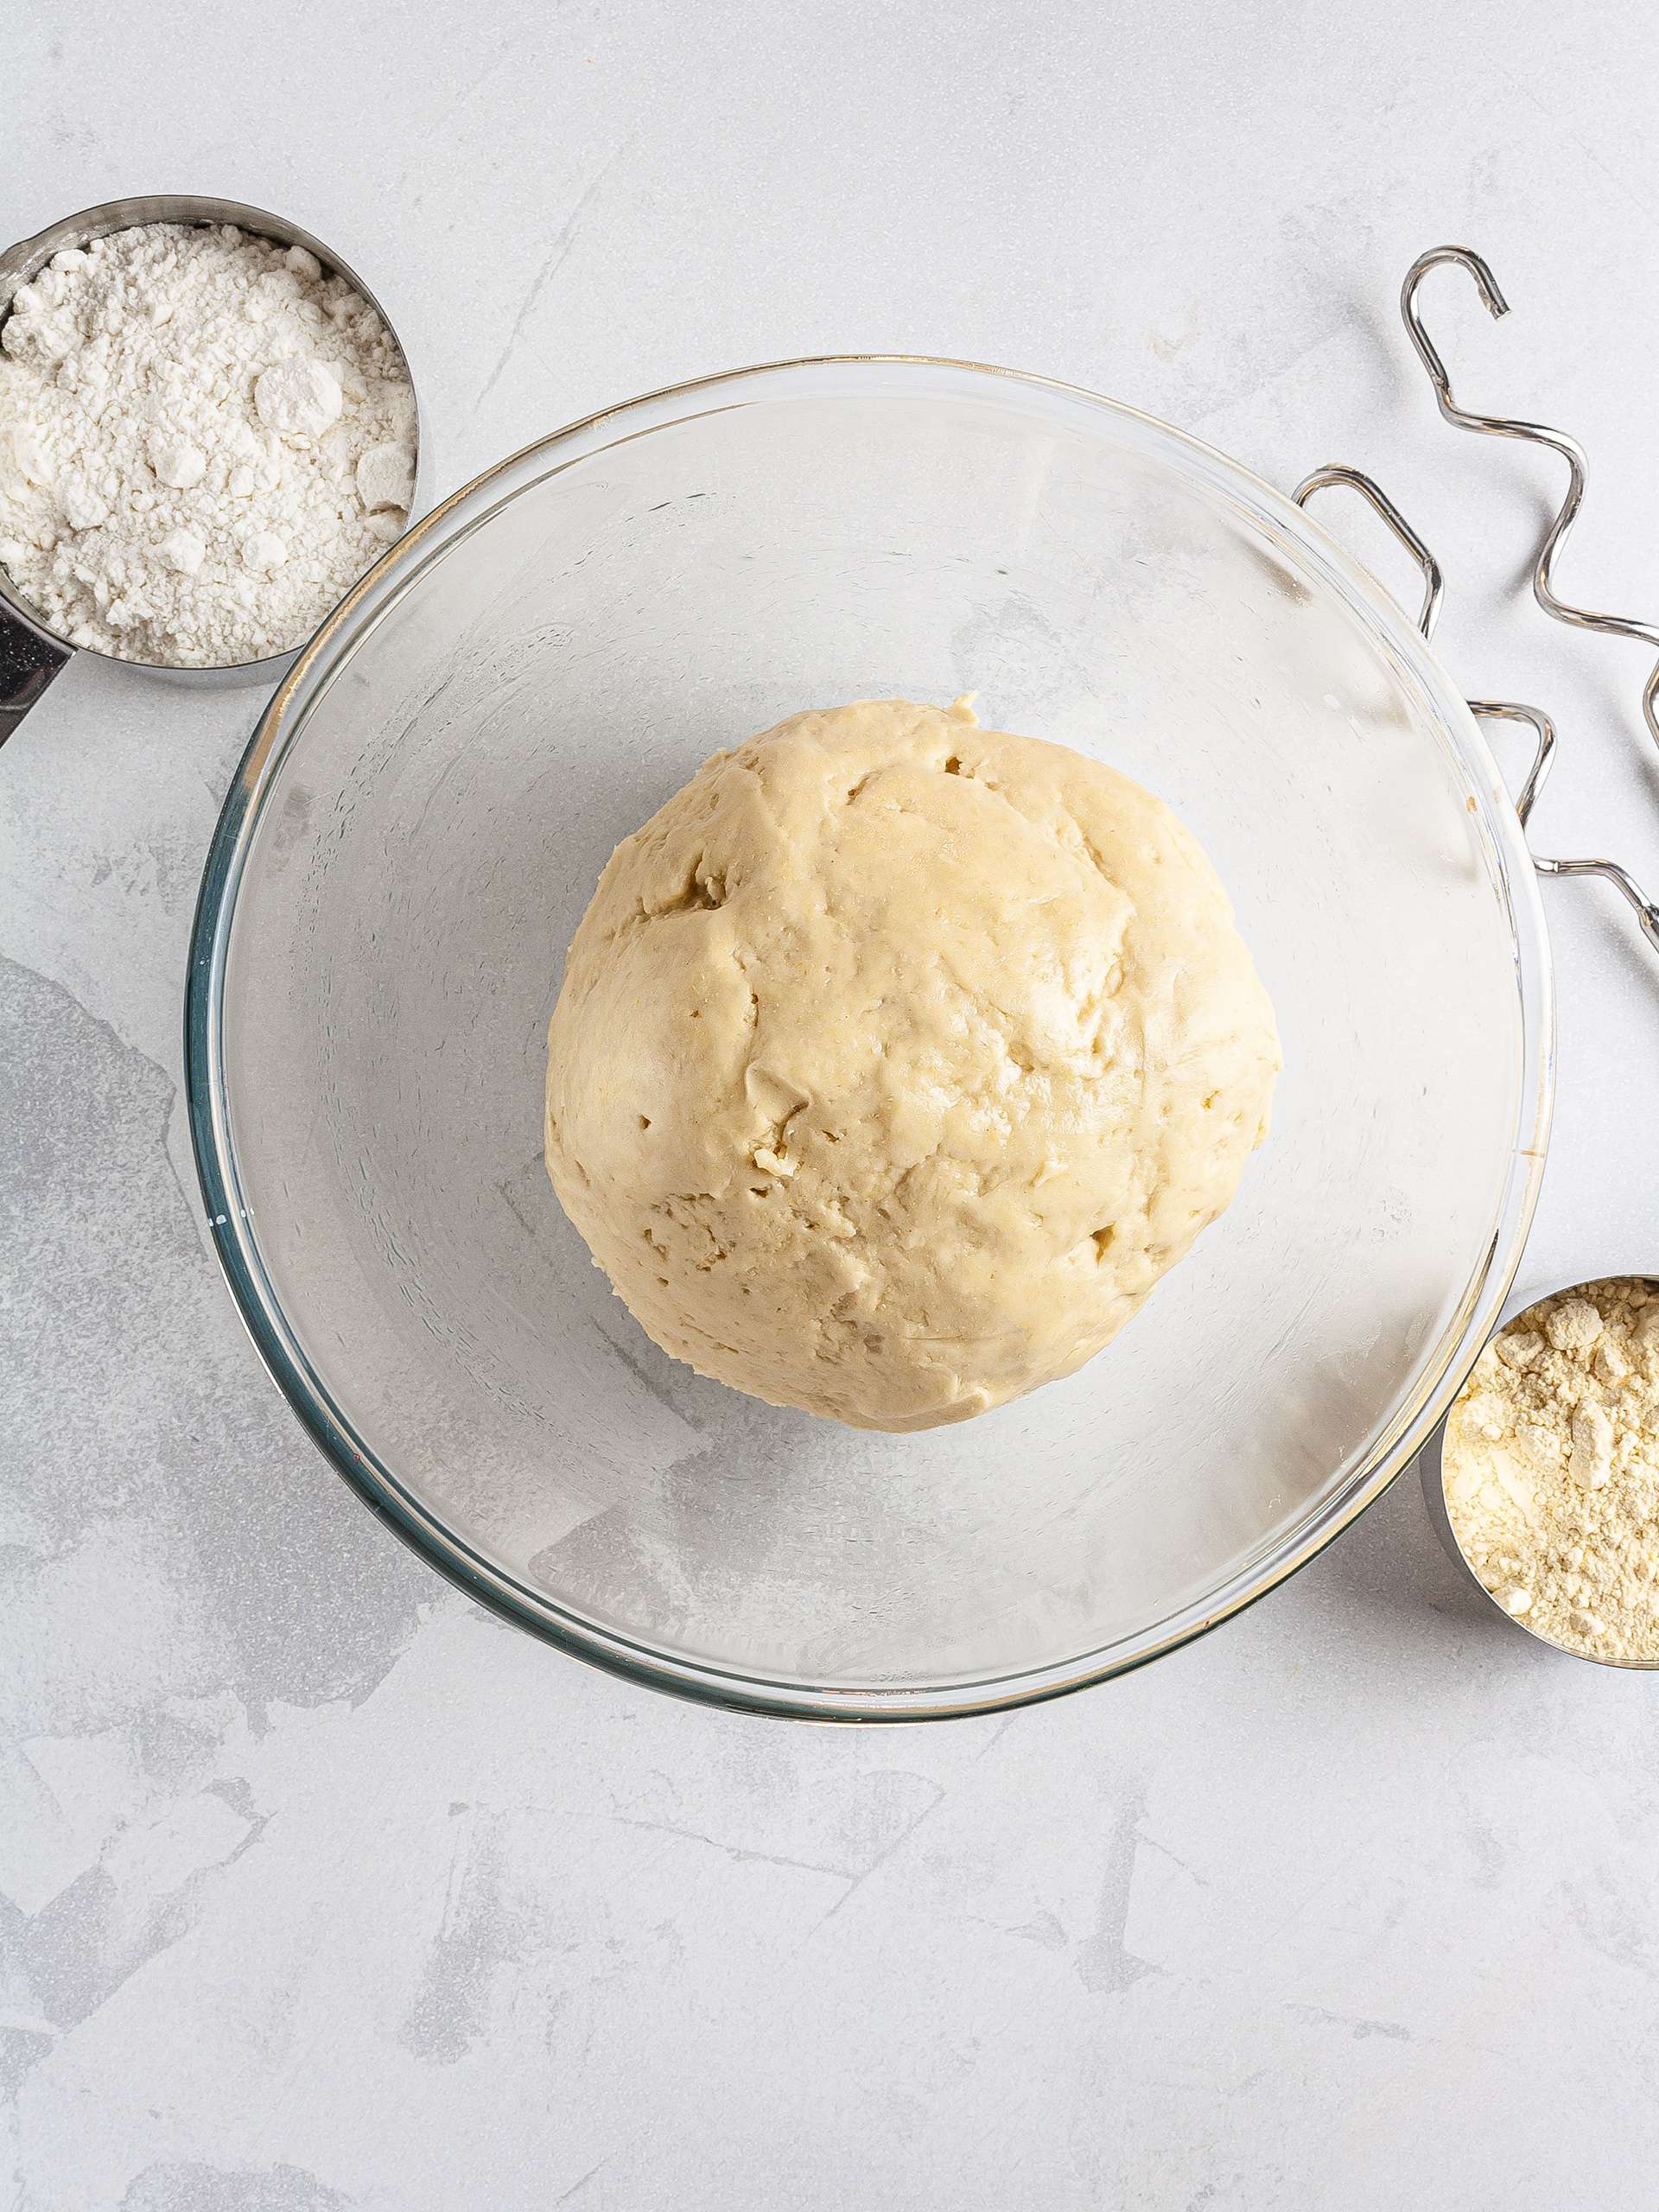 Croissant dough with gluten-free flour